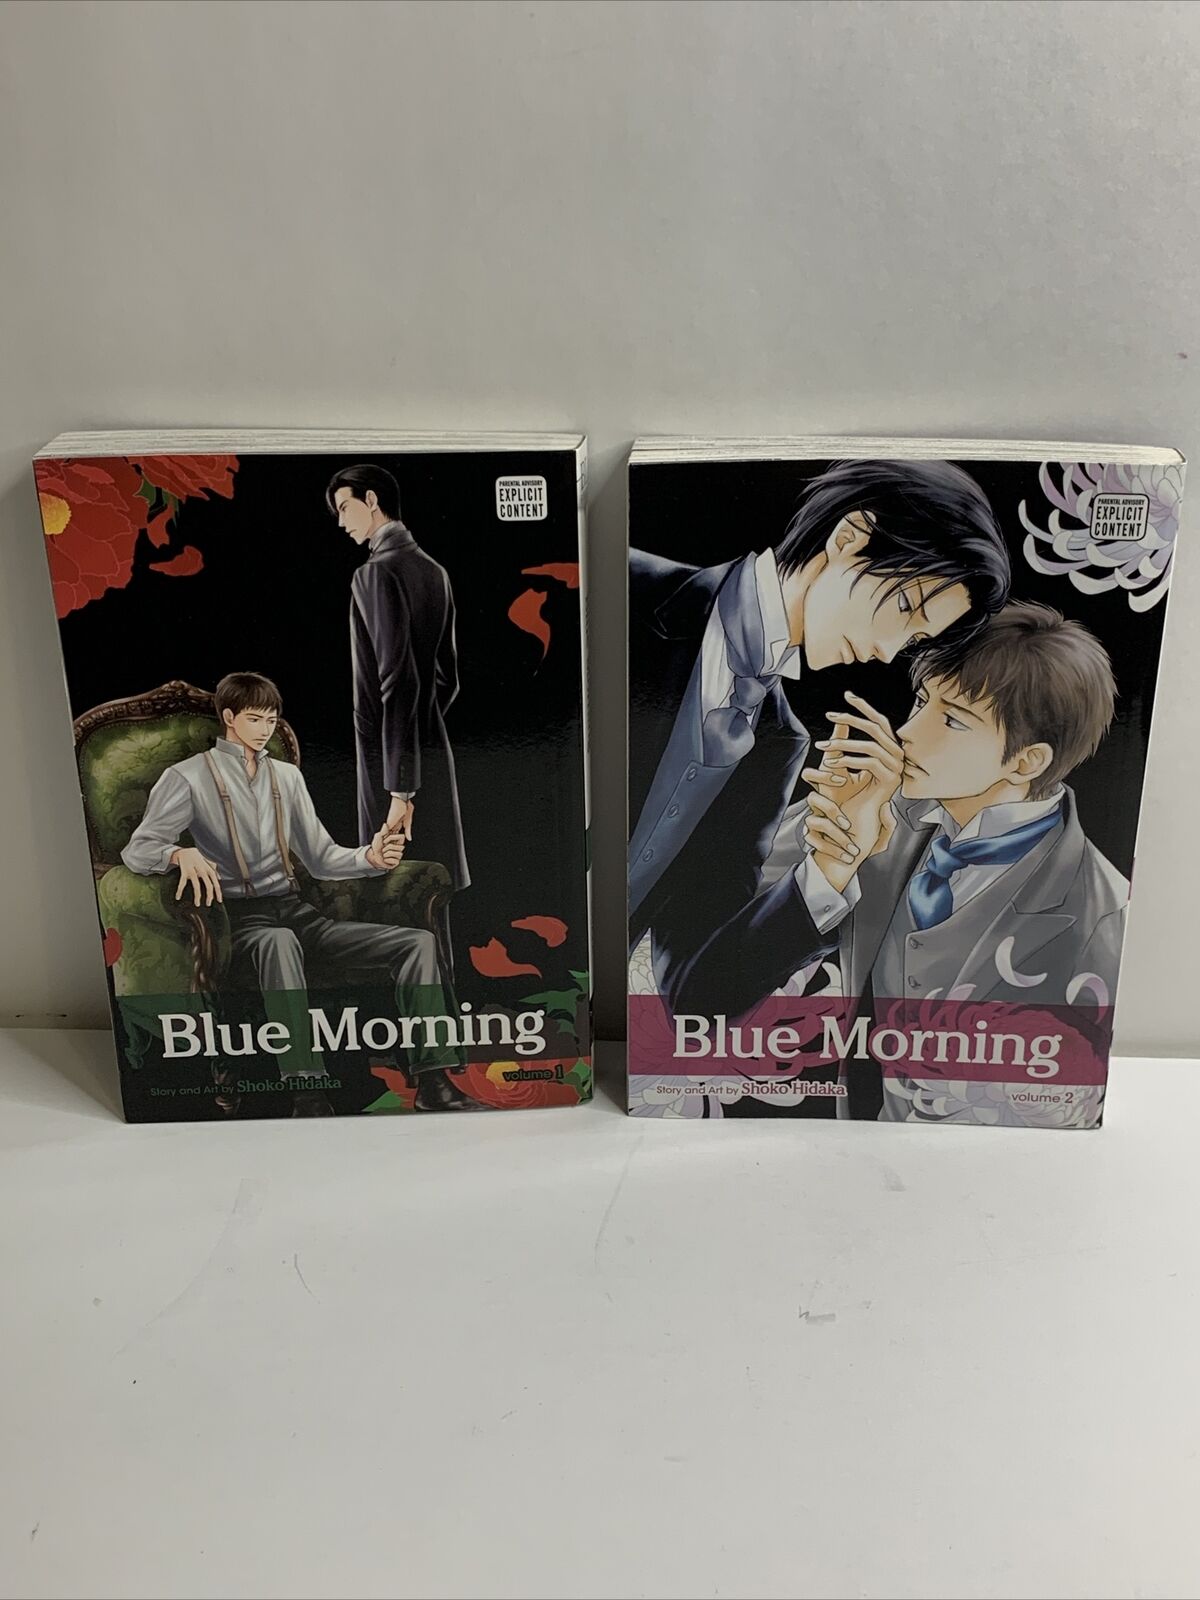 Blue Morning - Shoko Hidaka - English Manga - Vol. 1 & Vol. 2